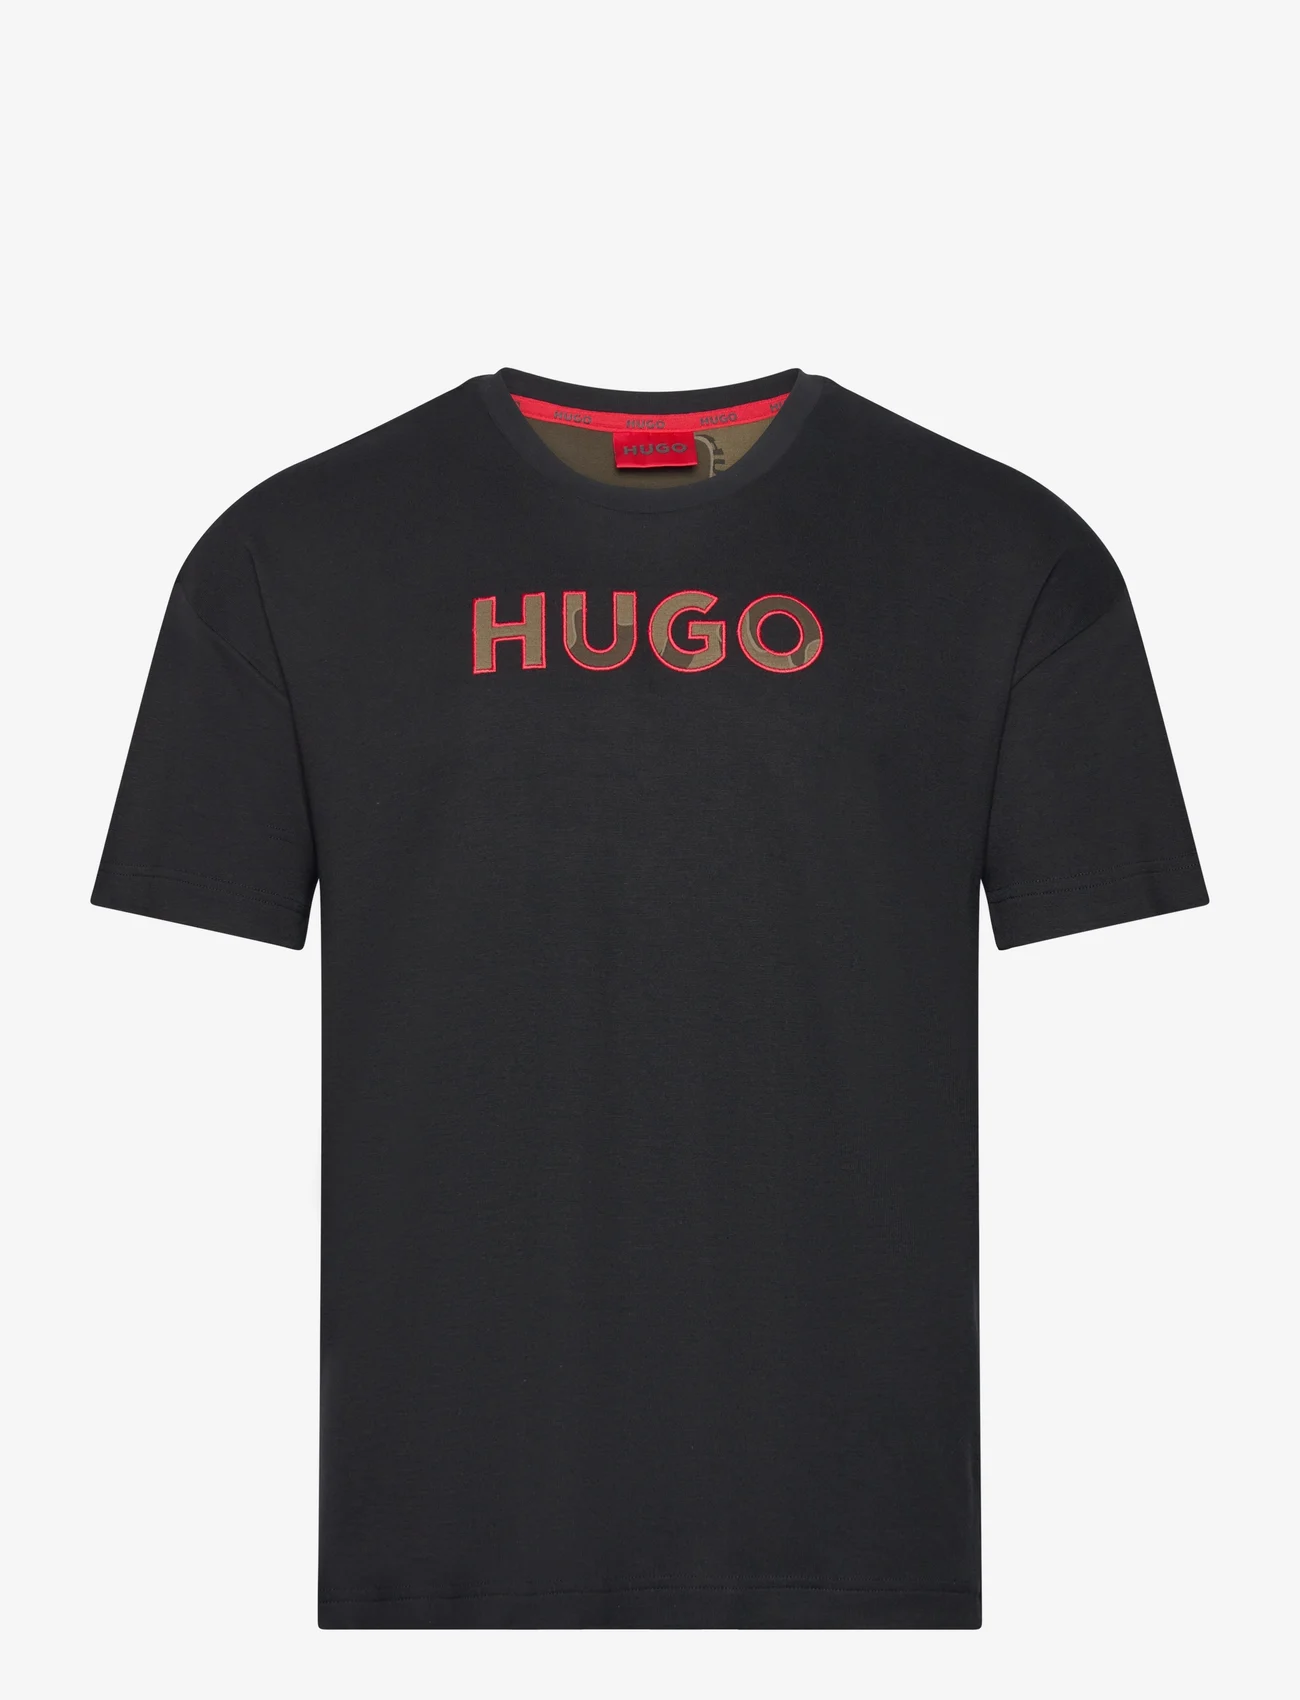 HUGO - Camo T-Shirt - kortermede t-skjorter - black - 0